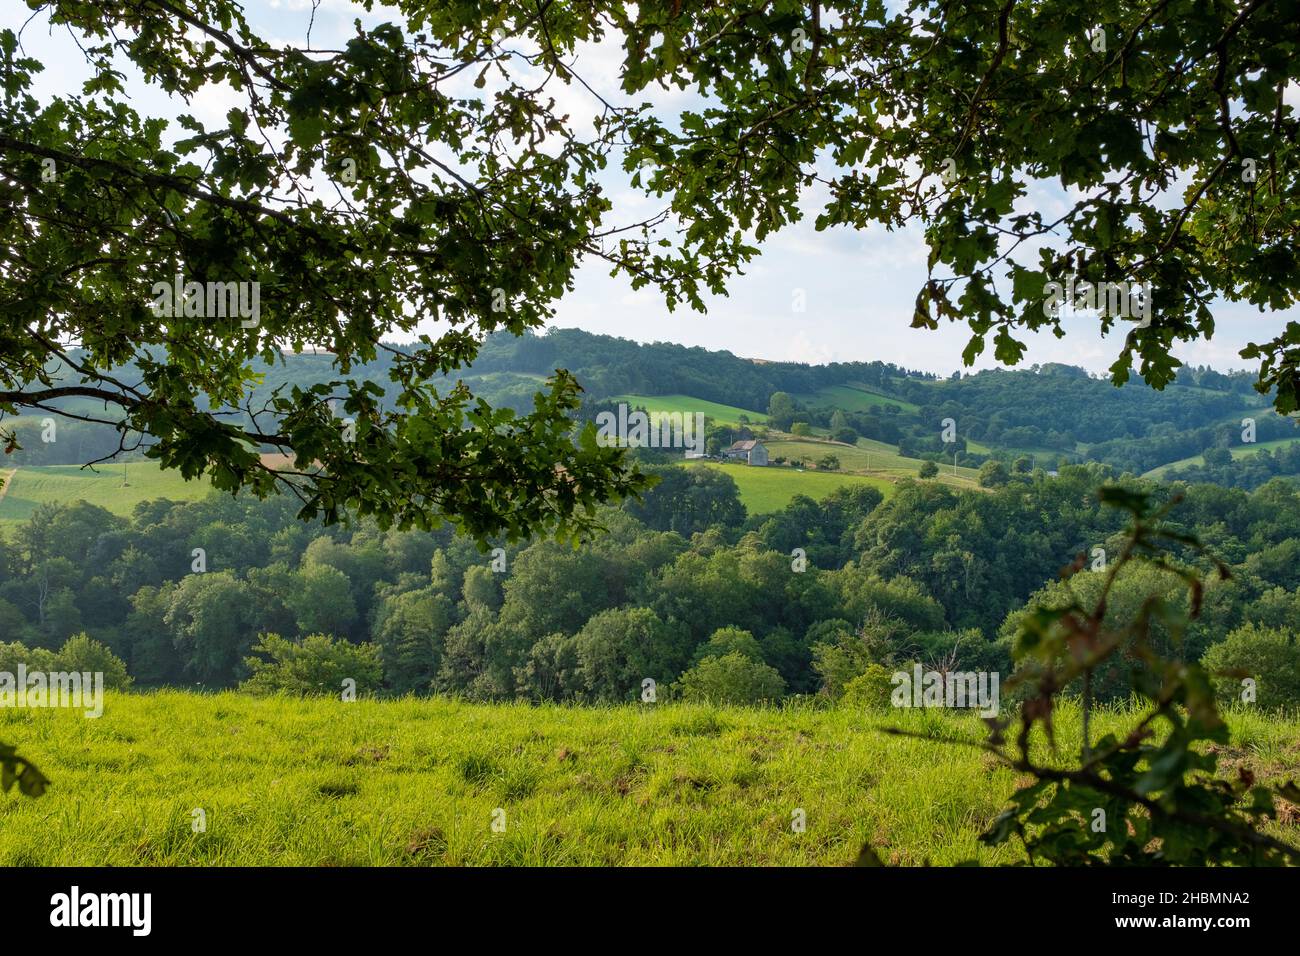 Une vue typique de la campagne dans le sud-ouest de la France sur le chemin de Saint-Jacques, pris un matin ensoleillé d'été, sans personne Banque D'Images